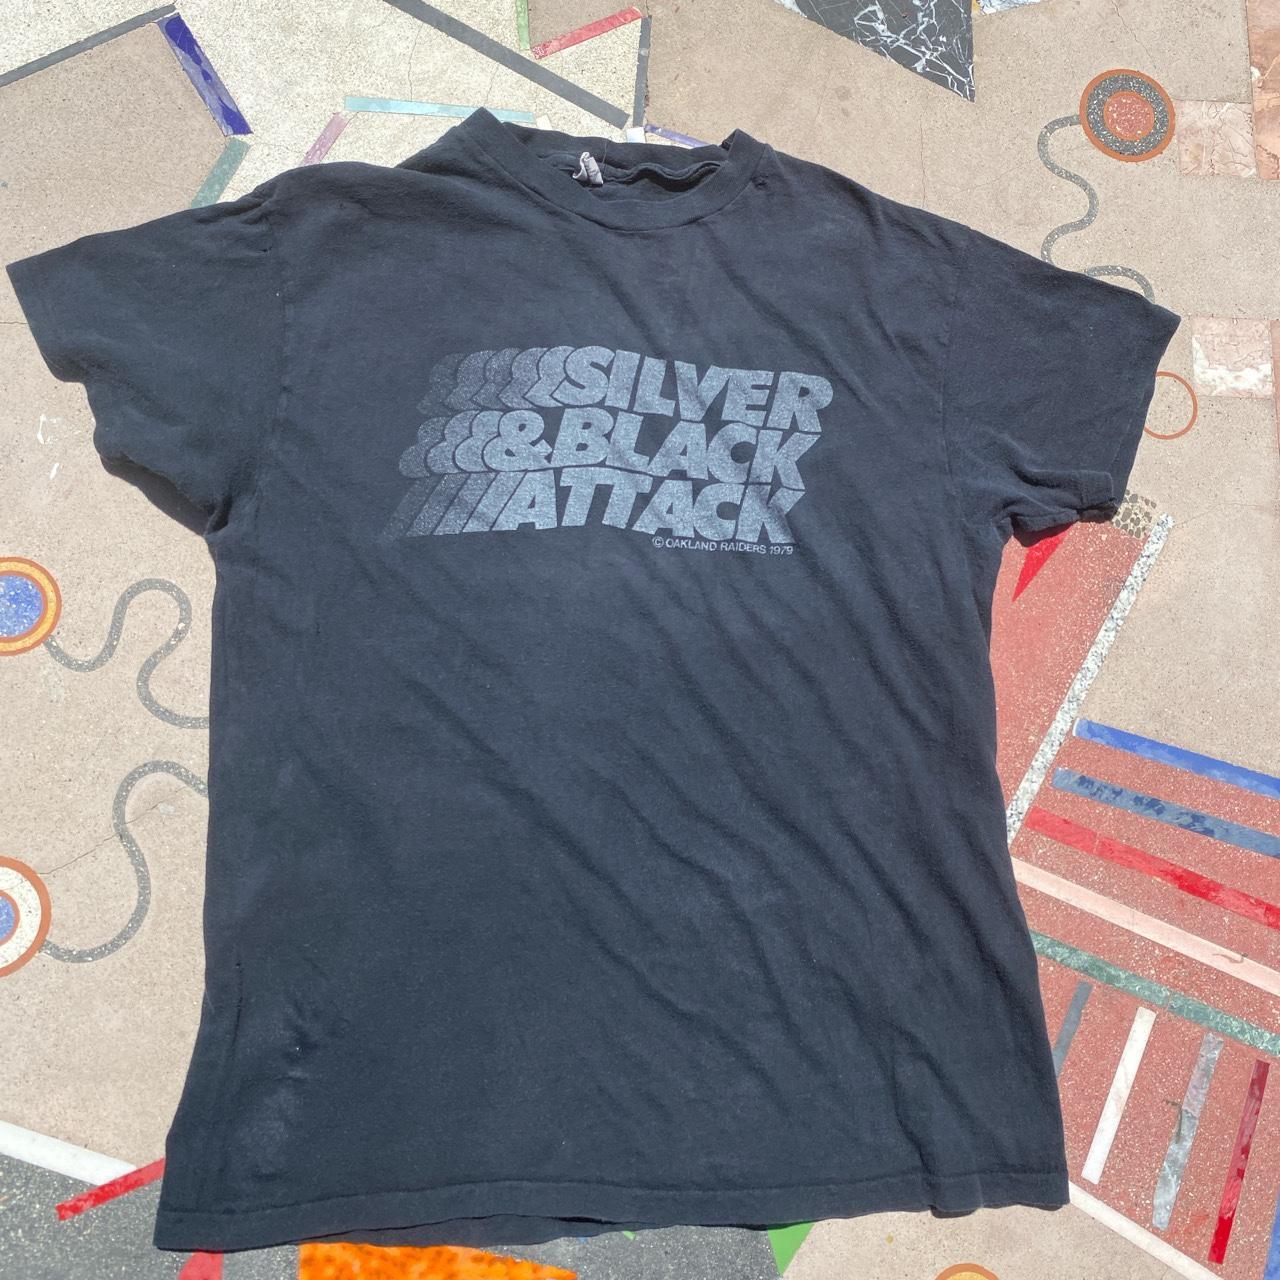 Vintage Oakland Raiders T Shirt Sliver & Black - Depop